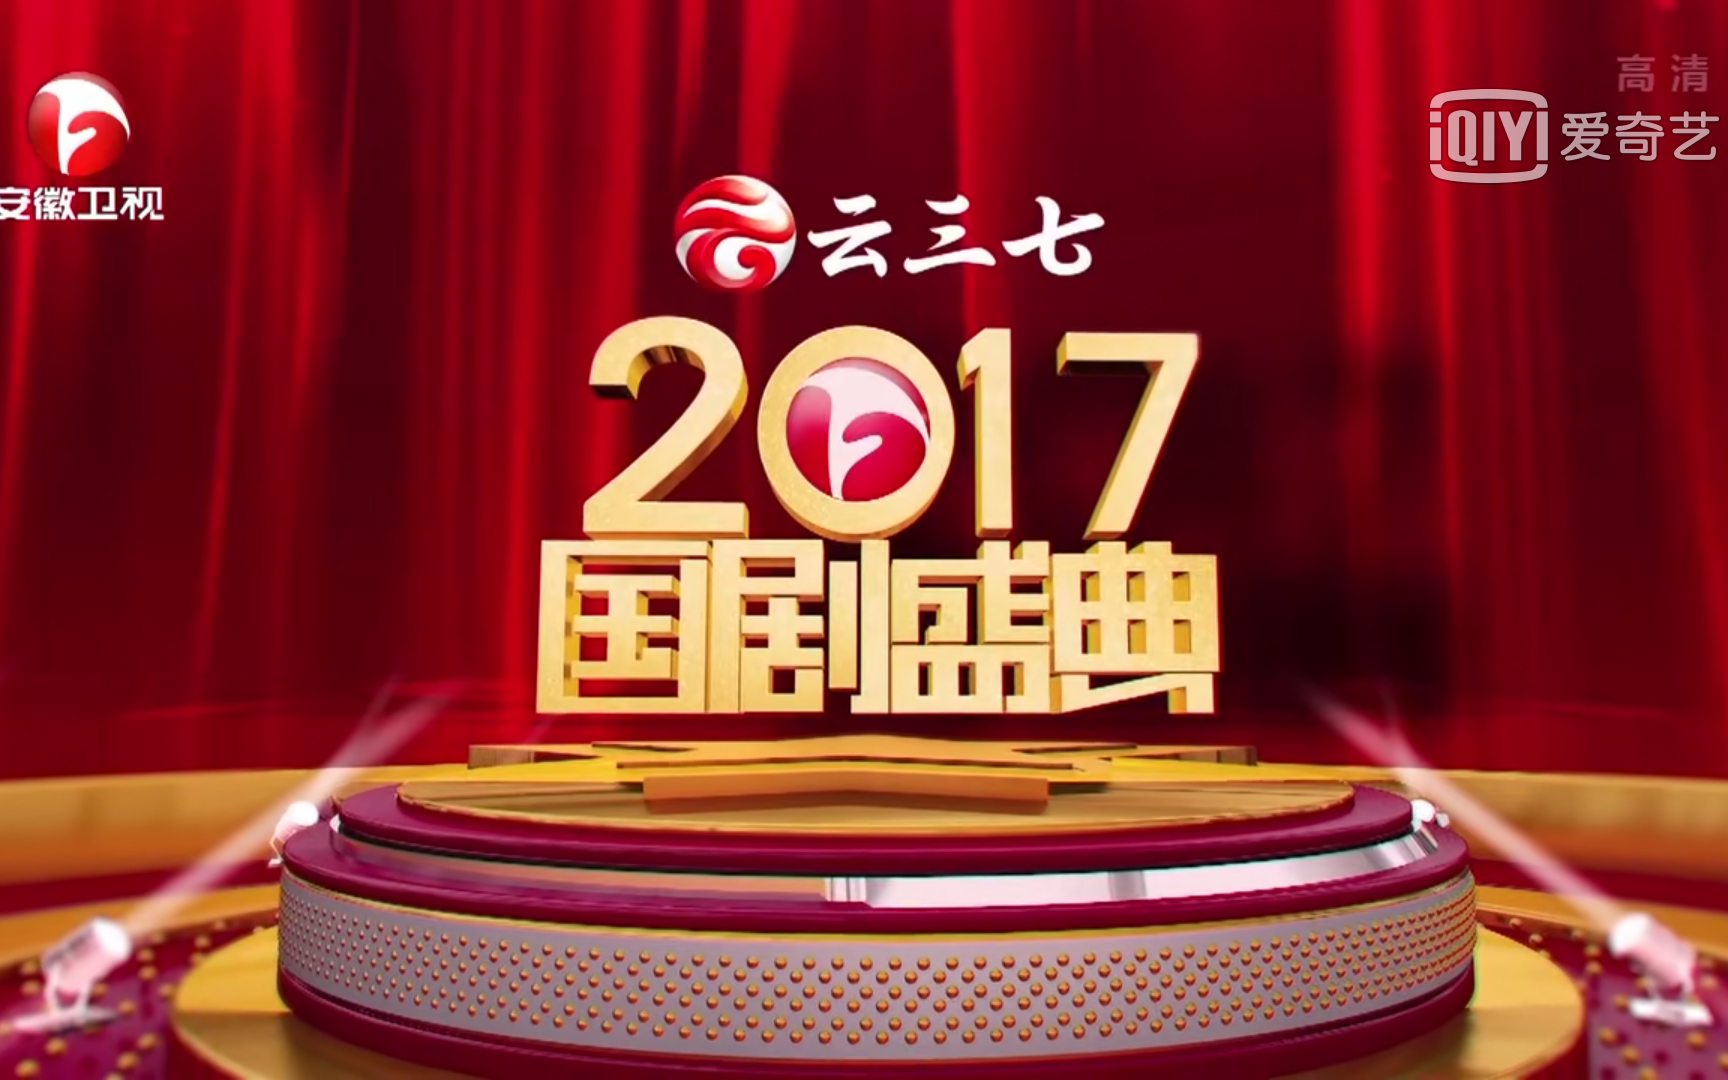 2017年安徽卫视 国剧盛典全程回顾